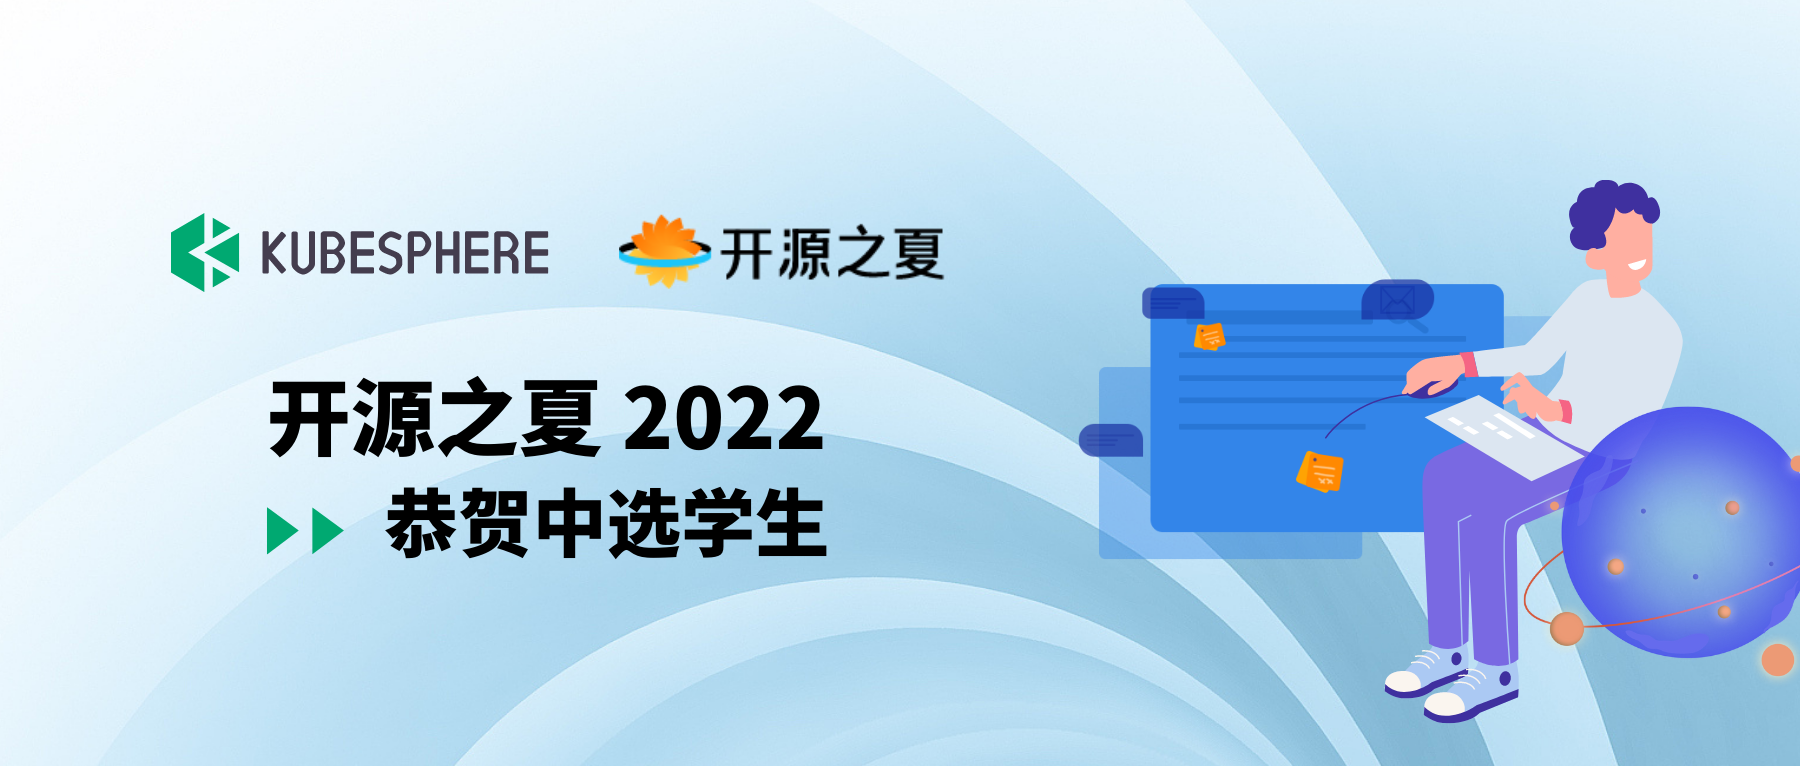 祝贺开源之夏 2022 KubeSphere 社区项目中选学生！